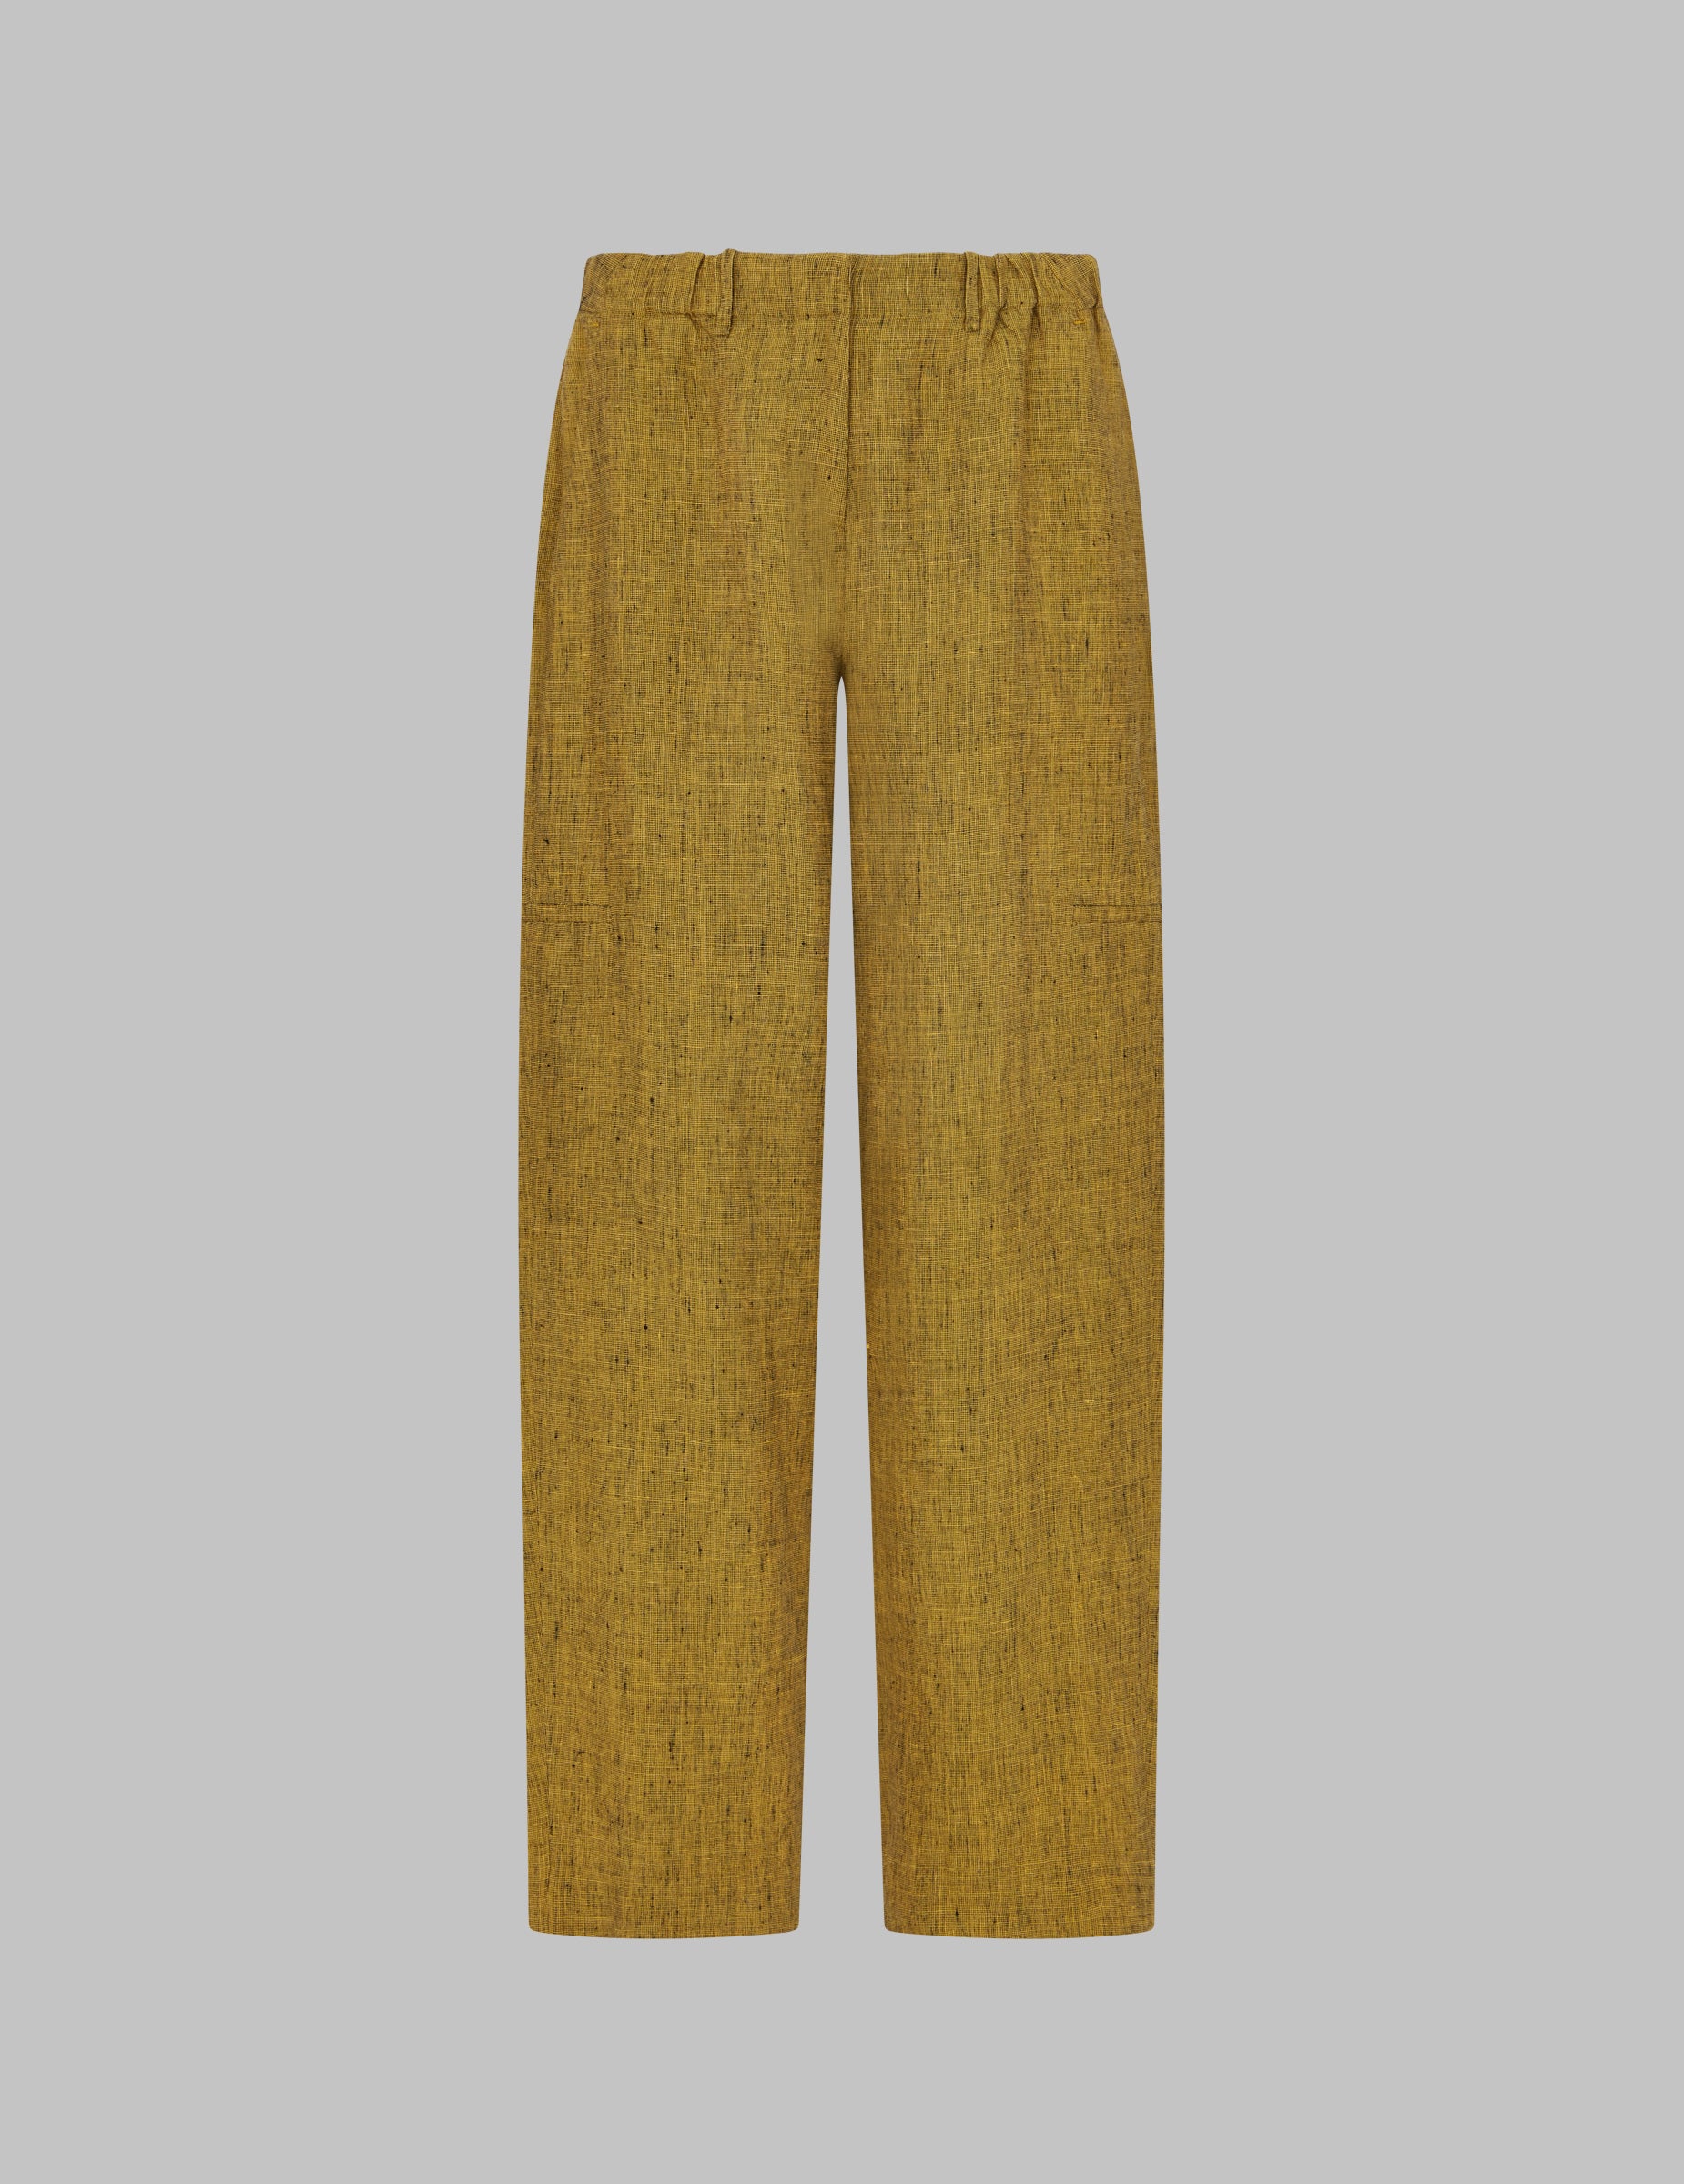 Men trouser detail casual citrus chinos | Cotton pants men, Khaki pants,  Mens outfits